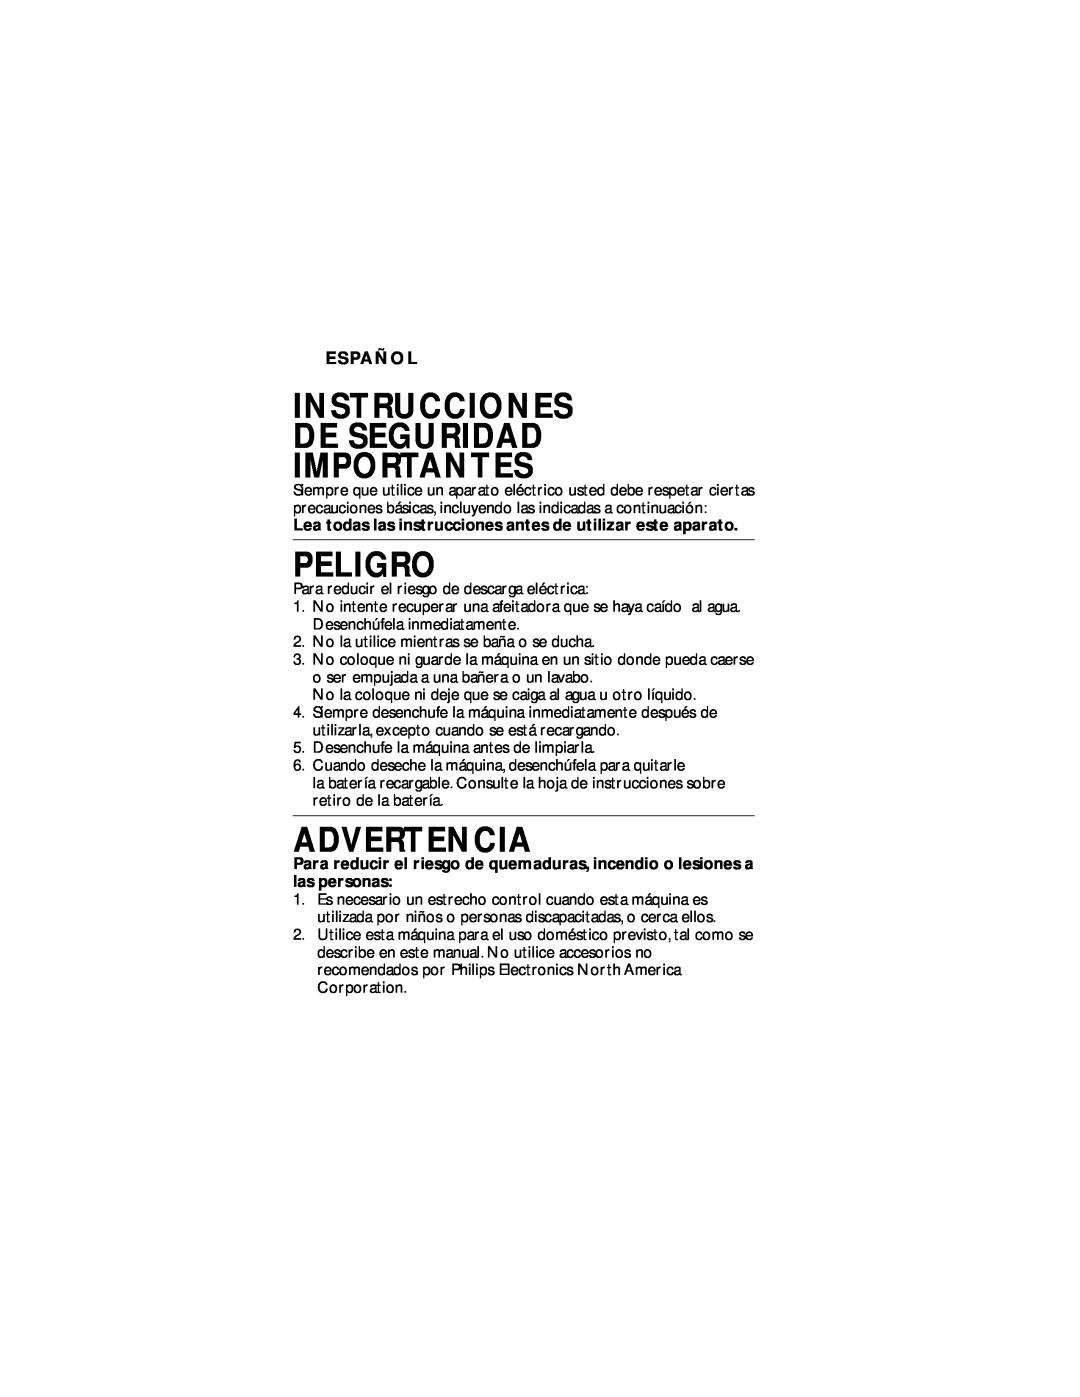 Philips T660 manual Instrucciones De Seguridad Importantes, Peligro, Advertencia, Español 